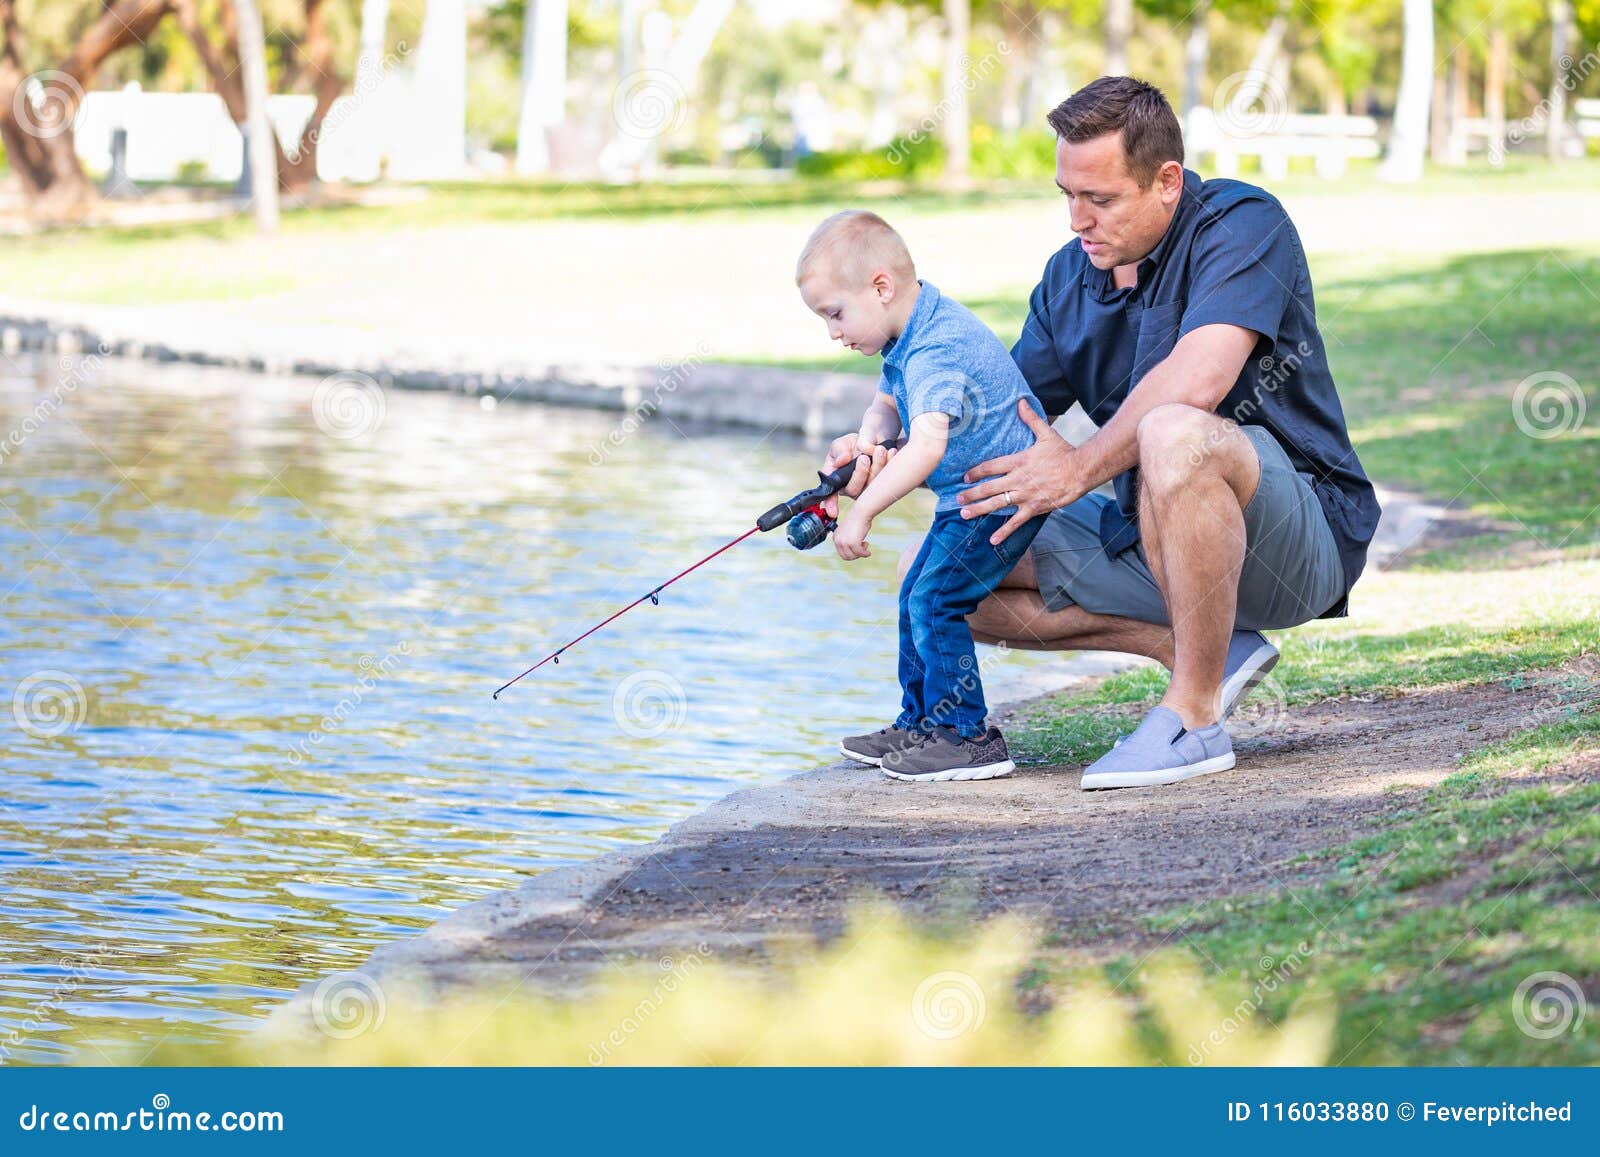 Сын ловит рыбу. Отец и сын на рыбалке. Папа с сыном на рыбалке. Рыбалка с сыном. Отец и сын рыбачат.